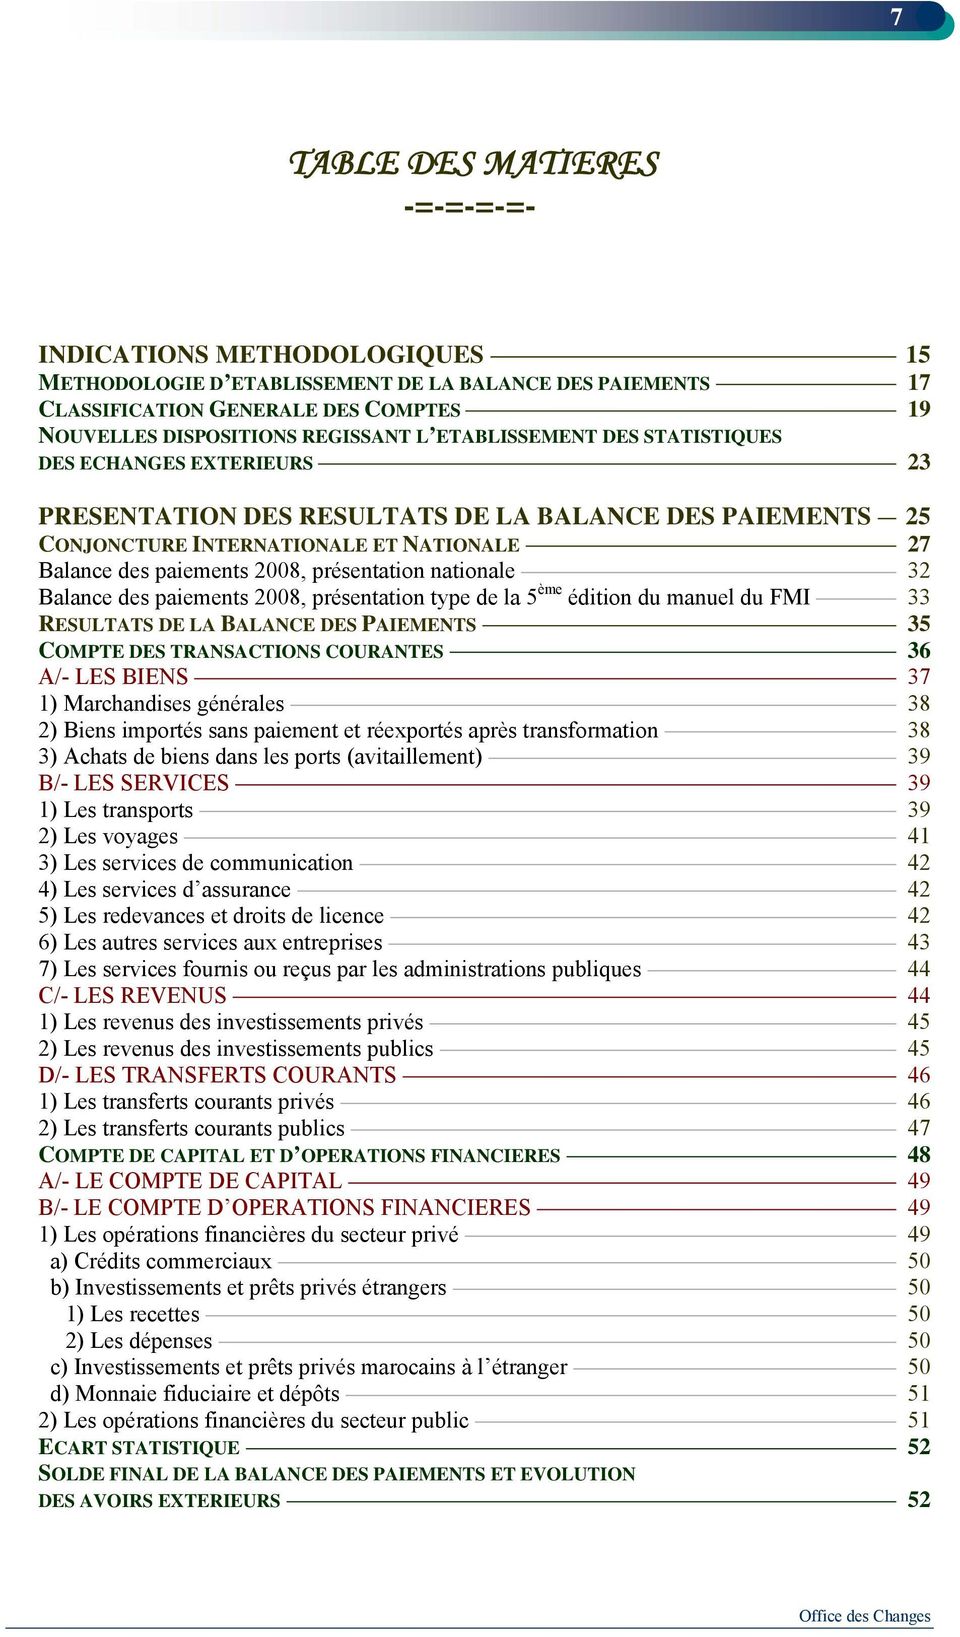 nationale 32 Balance des paiements 2008, présentation type de la 5 ème édition du manuel du FMI 33 RESULTATS DE LA BALANCE DES PAIEMENTS 35 COMPTE DES TRANSACTIONS COURANTES 36 A/- LES BIENS 37 1)